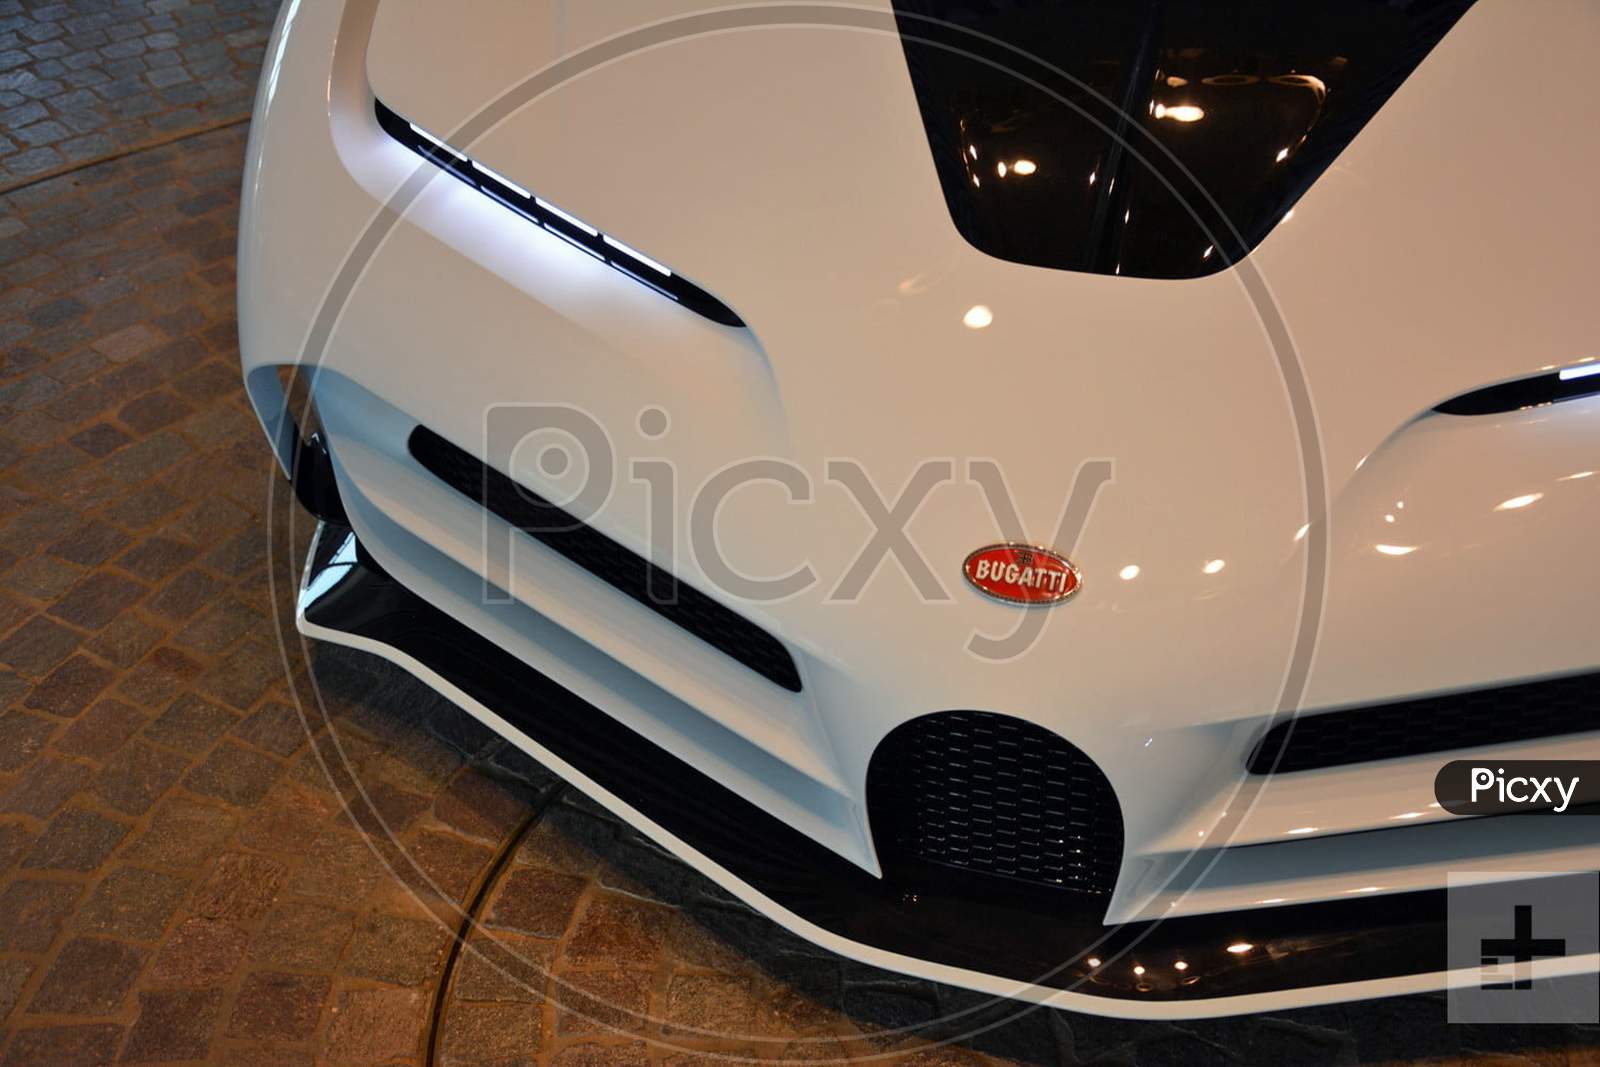 bugatti devo, special white edition, one of the super luxury car in the world